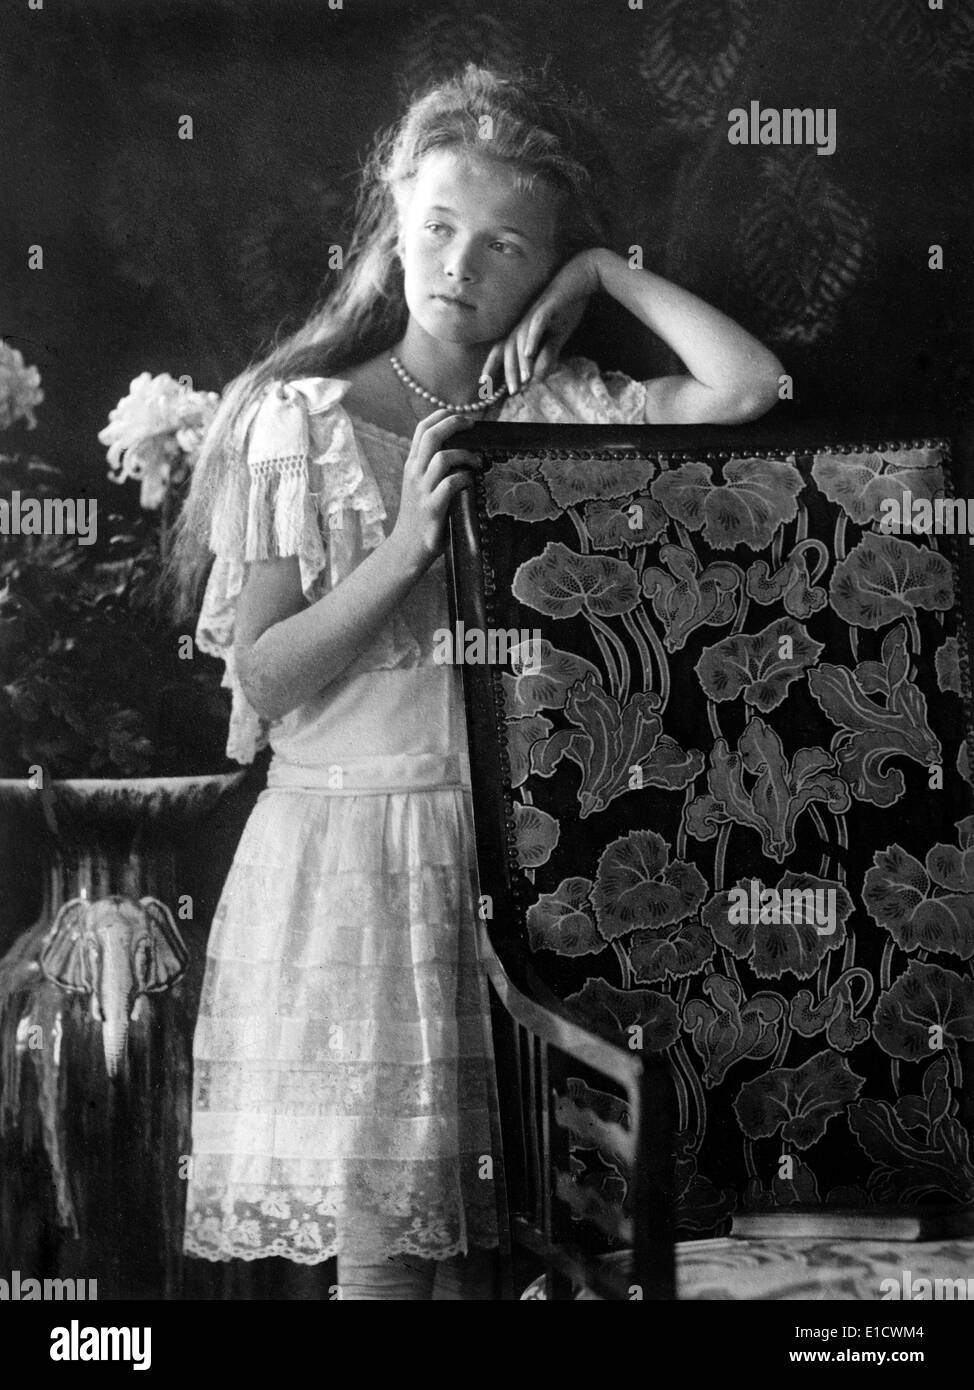 La gran duquesa Anastasia Nikolaevna de Rusia (18 de junio de 1901 - 17 de julio de 1918) La hija más joven del zar Nicolás II, el último soberano de la Rusia Imperial, y su esposa, la Zarina Alexandra Fyodorovna. Foto de stock